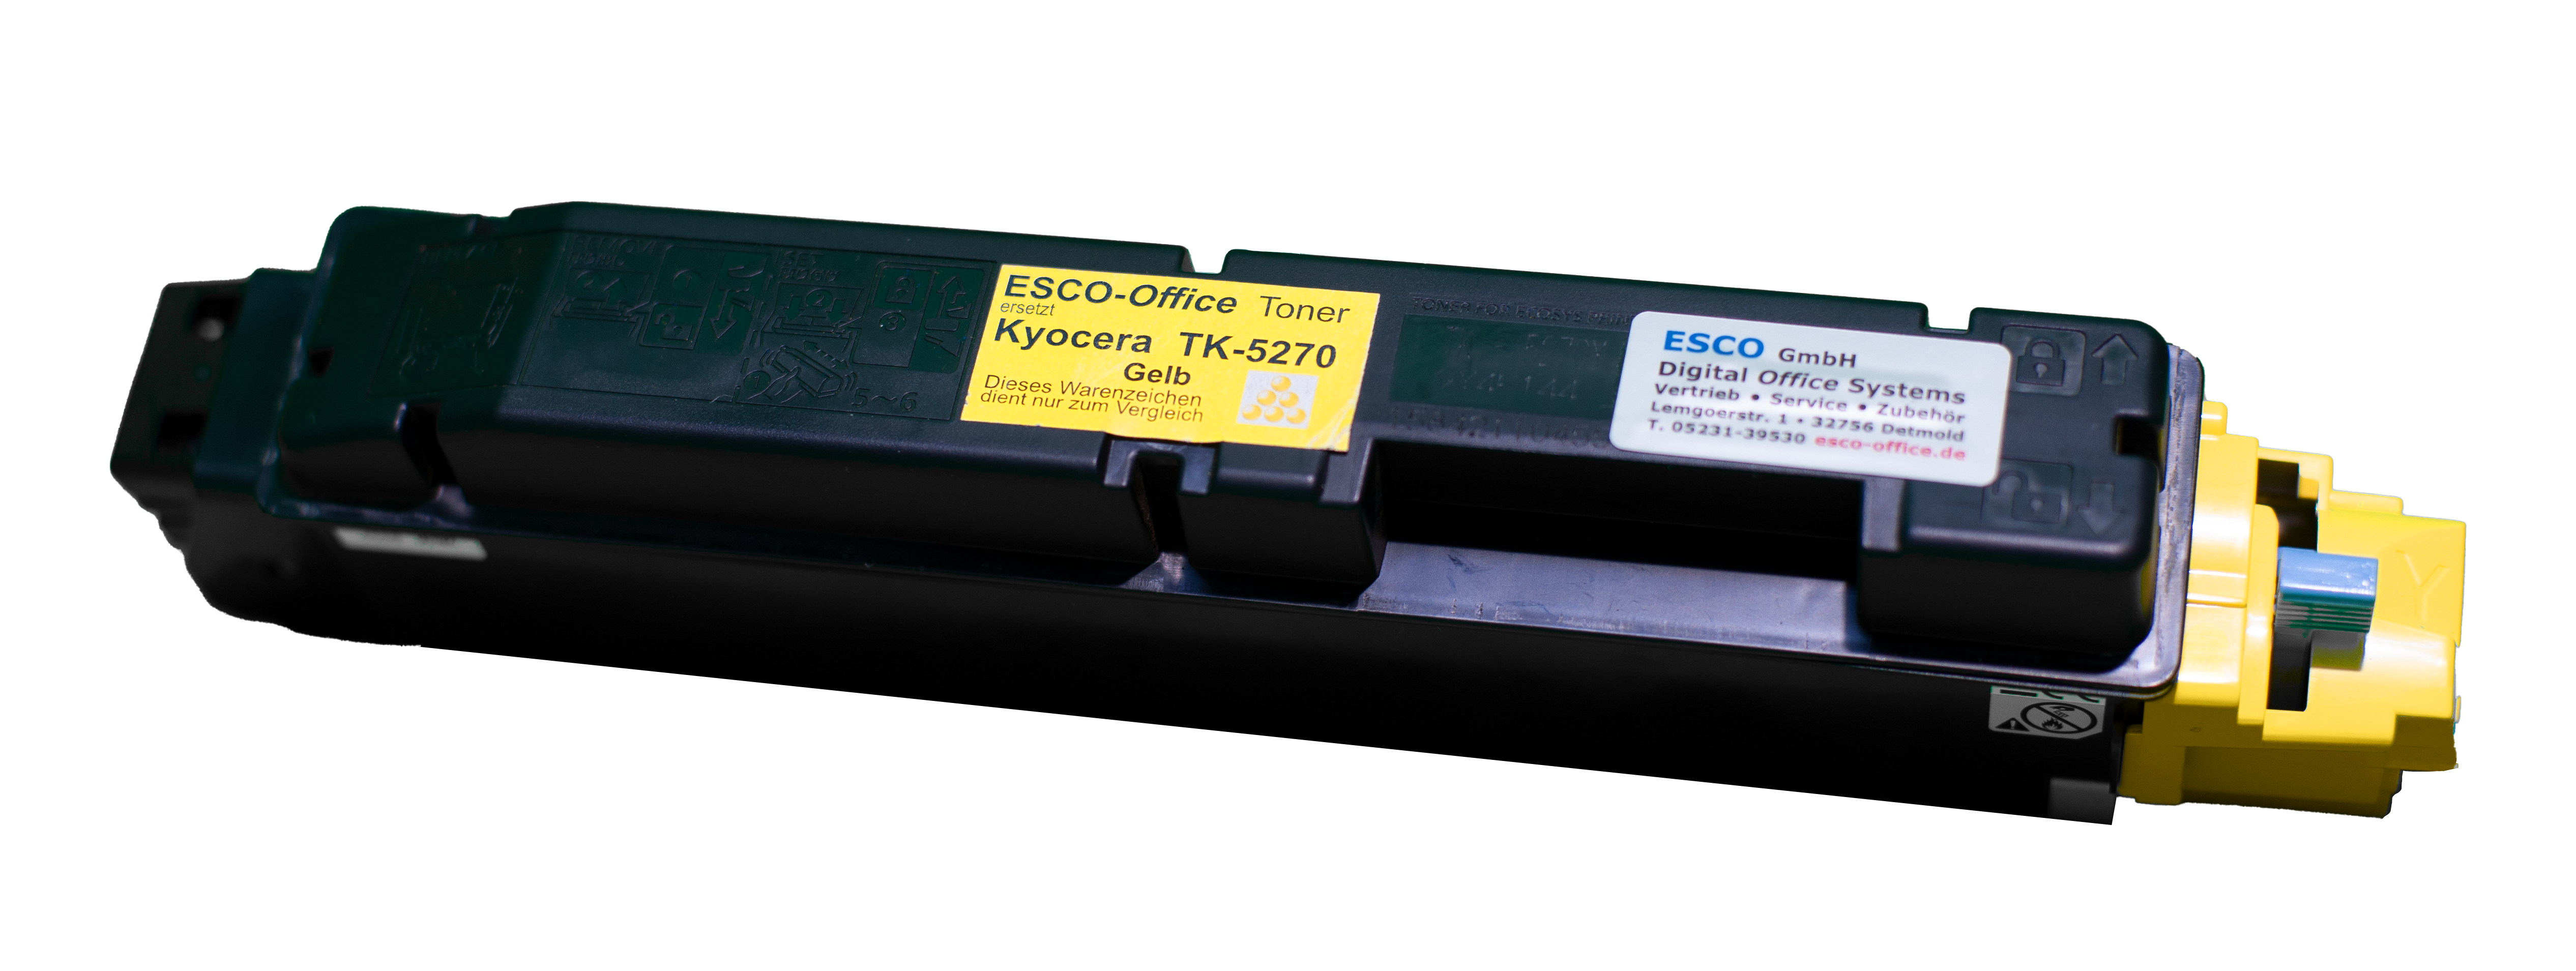 ESCO-Toner ersetzt TK-5270 Y für Kyocera "Gelb"